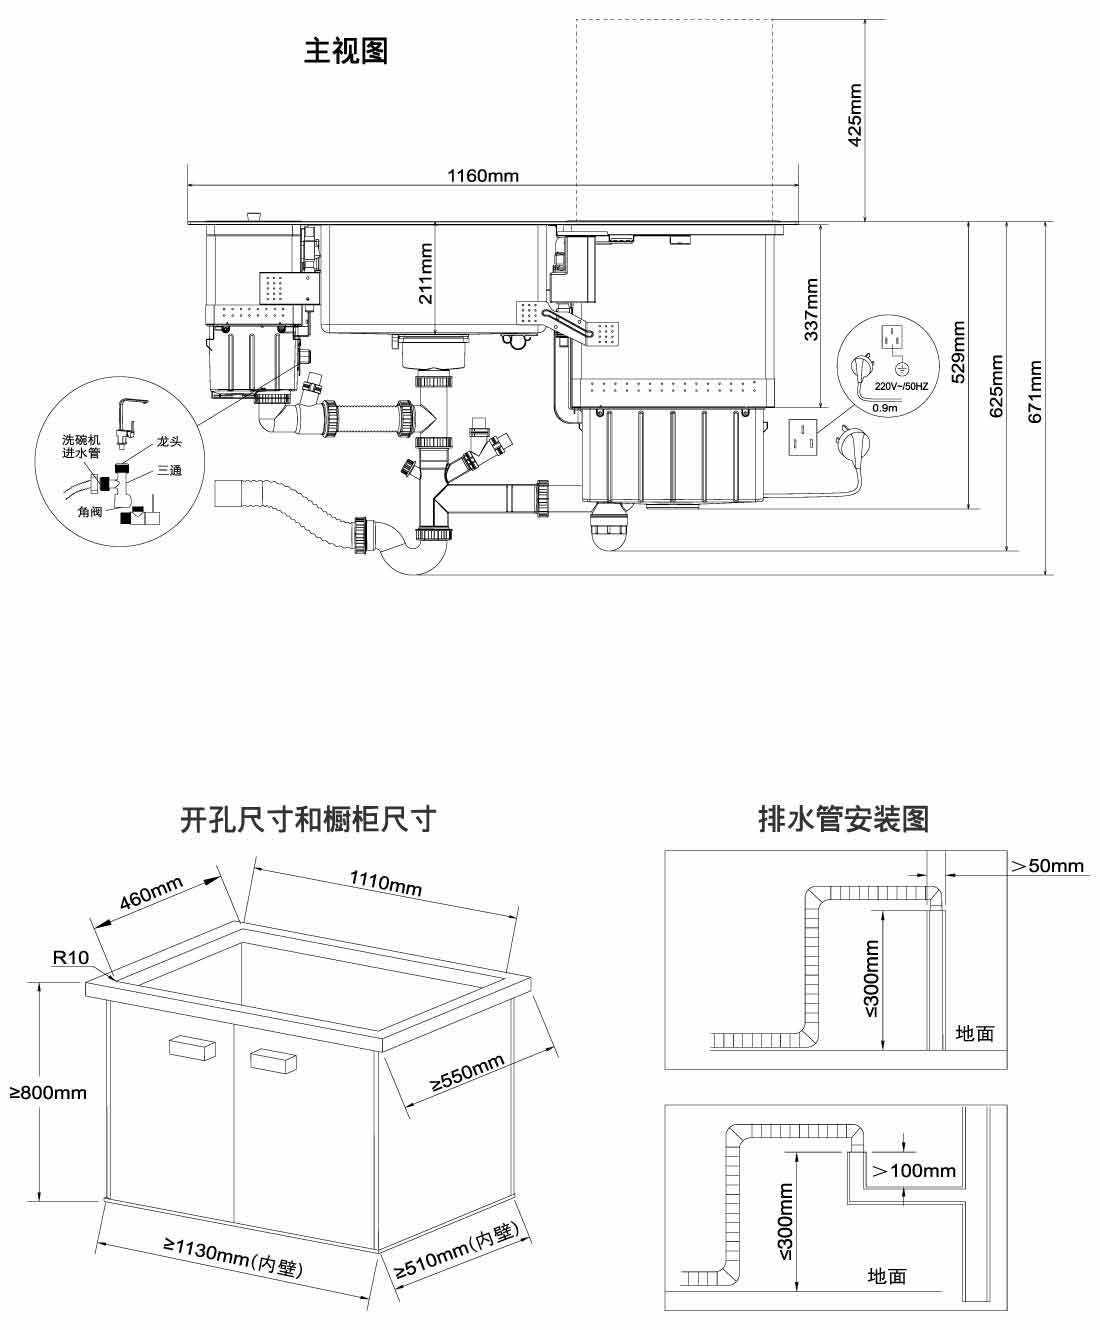 安装示意图方太深谙中国人的生活习惯,创造性地将水槽,洗碗机,果蔬